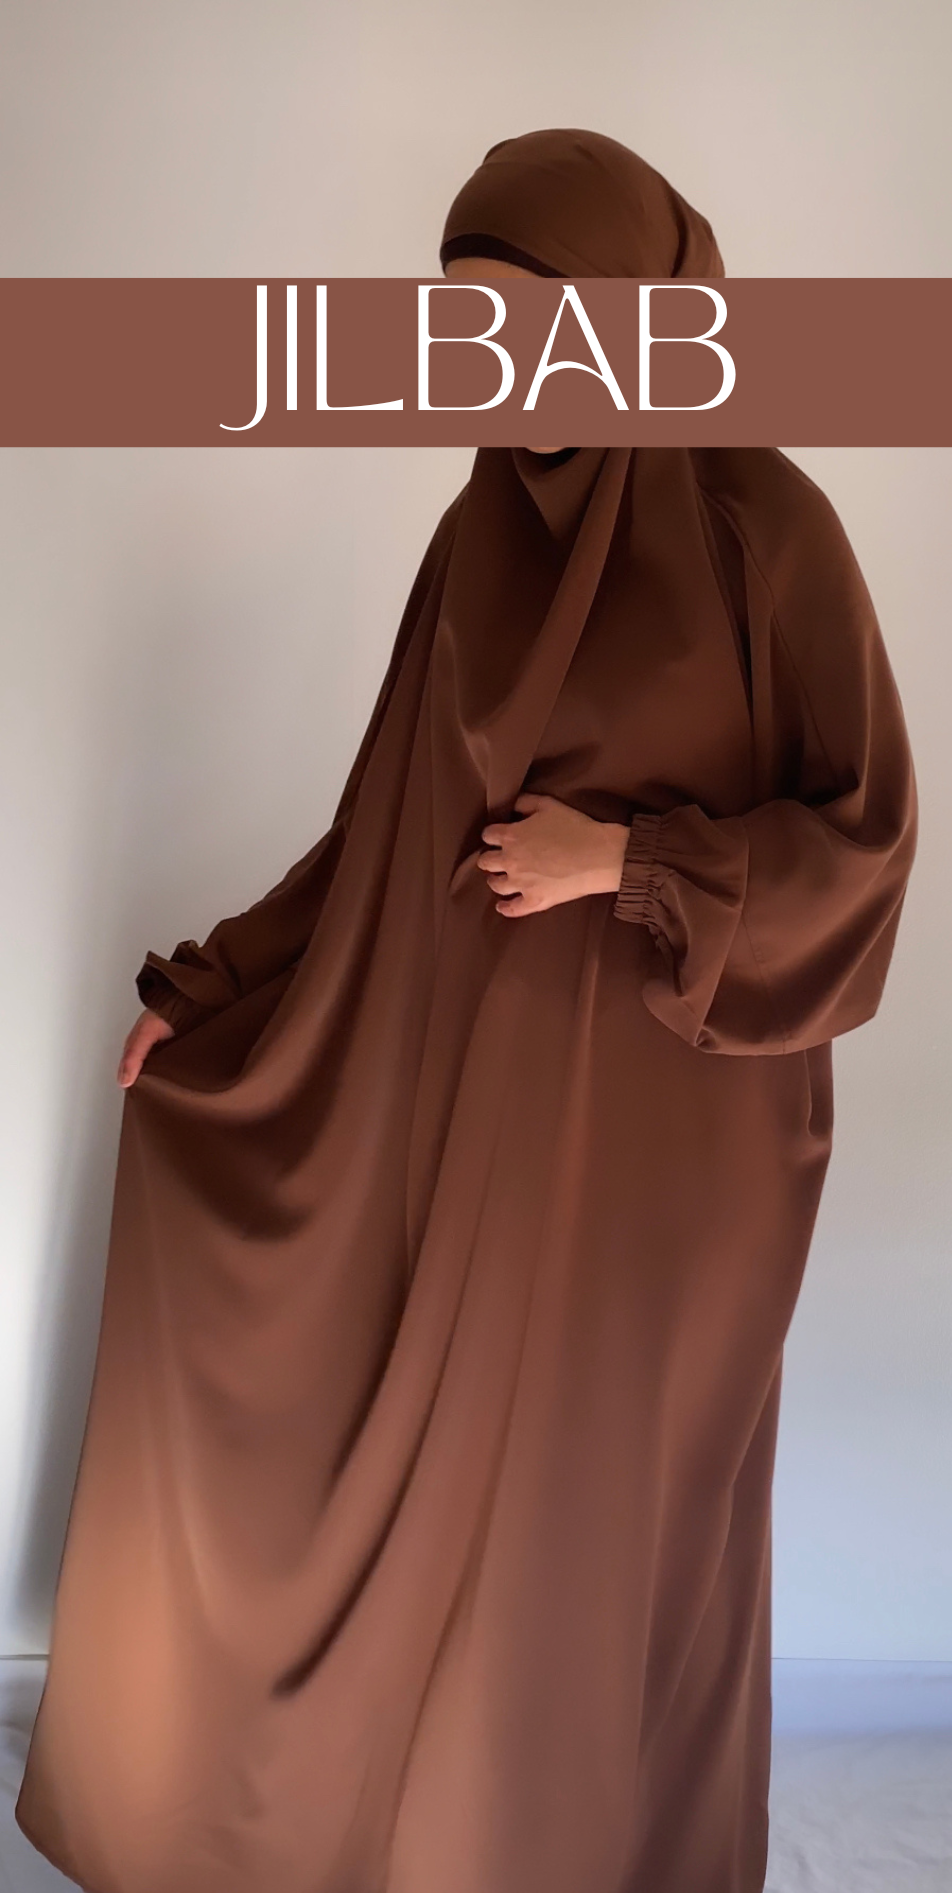 Jilbab Chocolate Brown